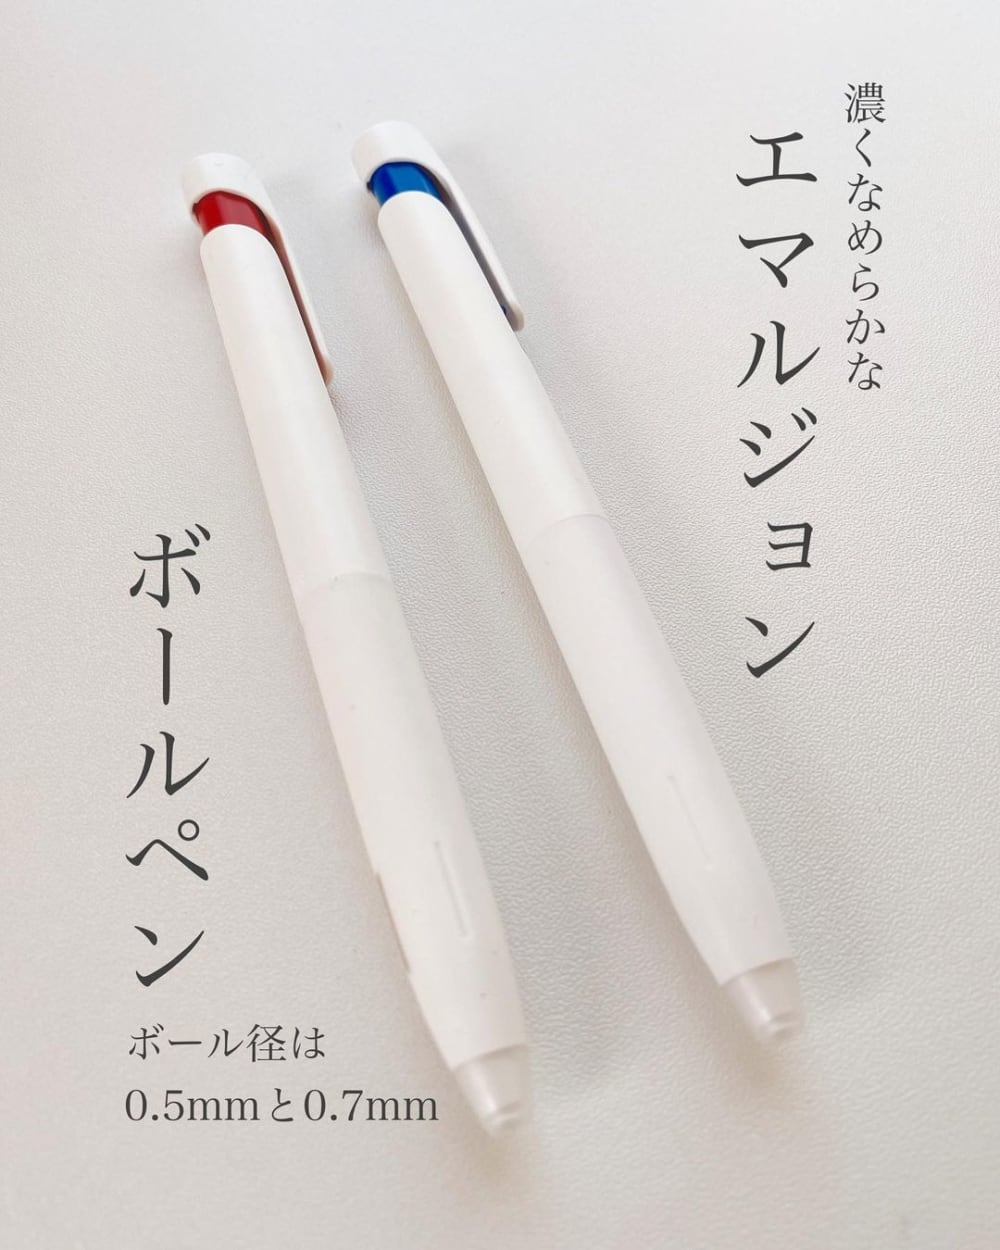 ブレンシステムボールペンの赤と青の写真